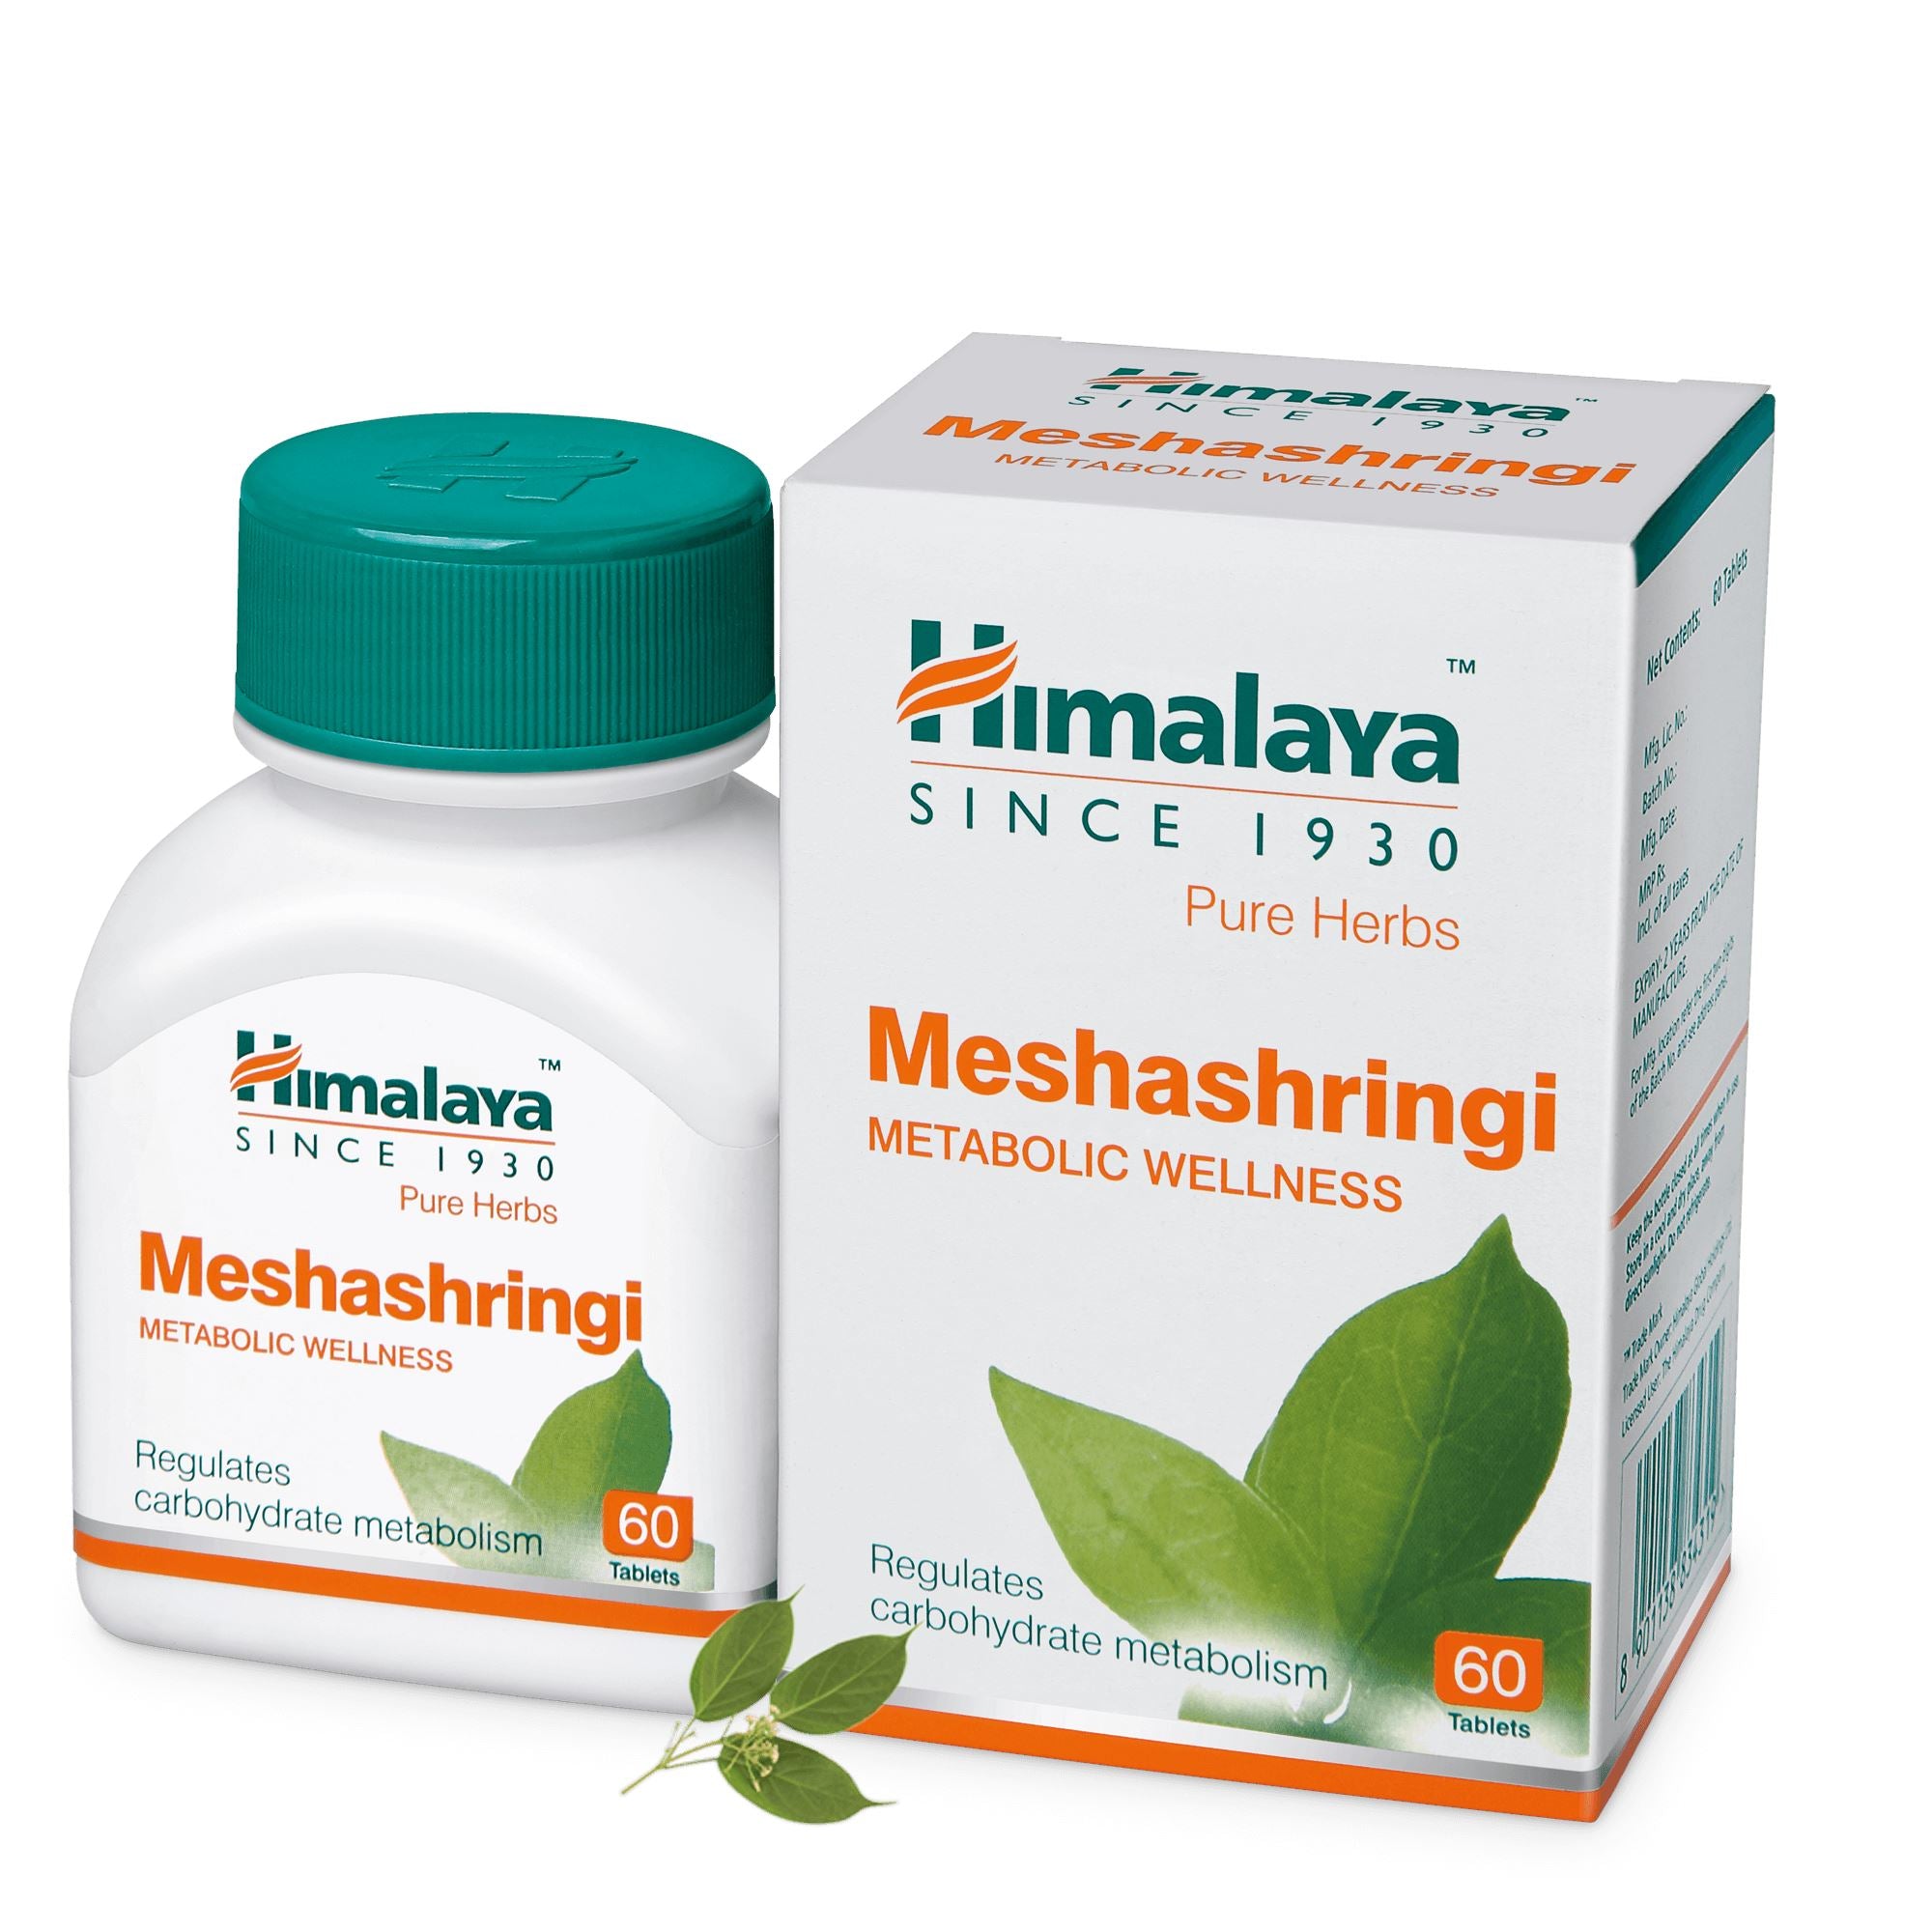 Himalaya Meshashringi - Regulates carbohydrate metabolism